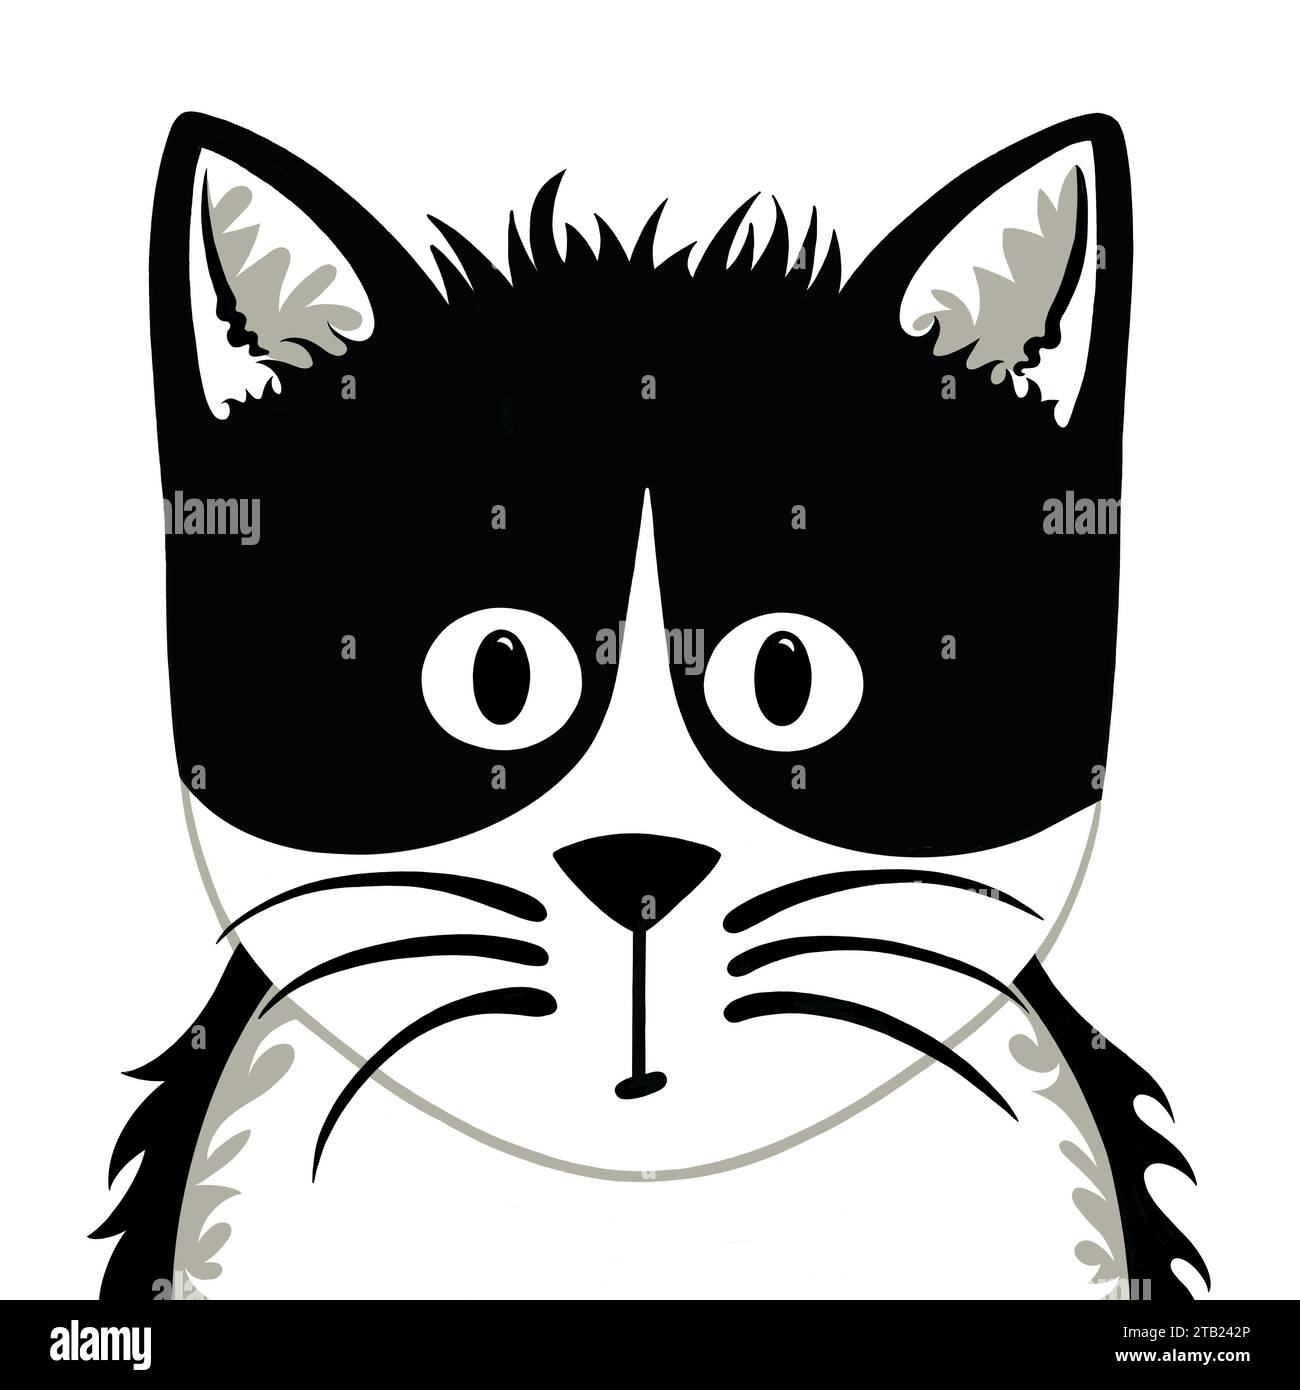 Jolie illustration de chat noir et blanc dans un style de bande dessinée. Motif chat simple et audacieux. Chaton noir et blanc avec de longues moustaches et des marques spectaculaires. Banque D'Images